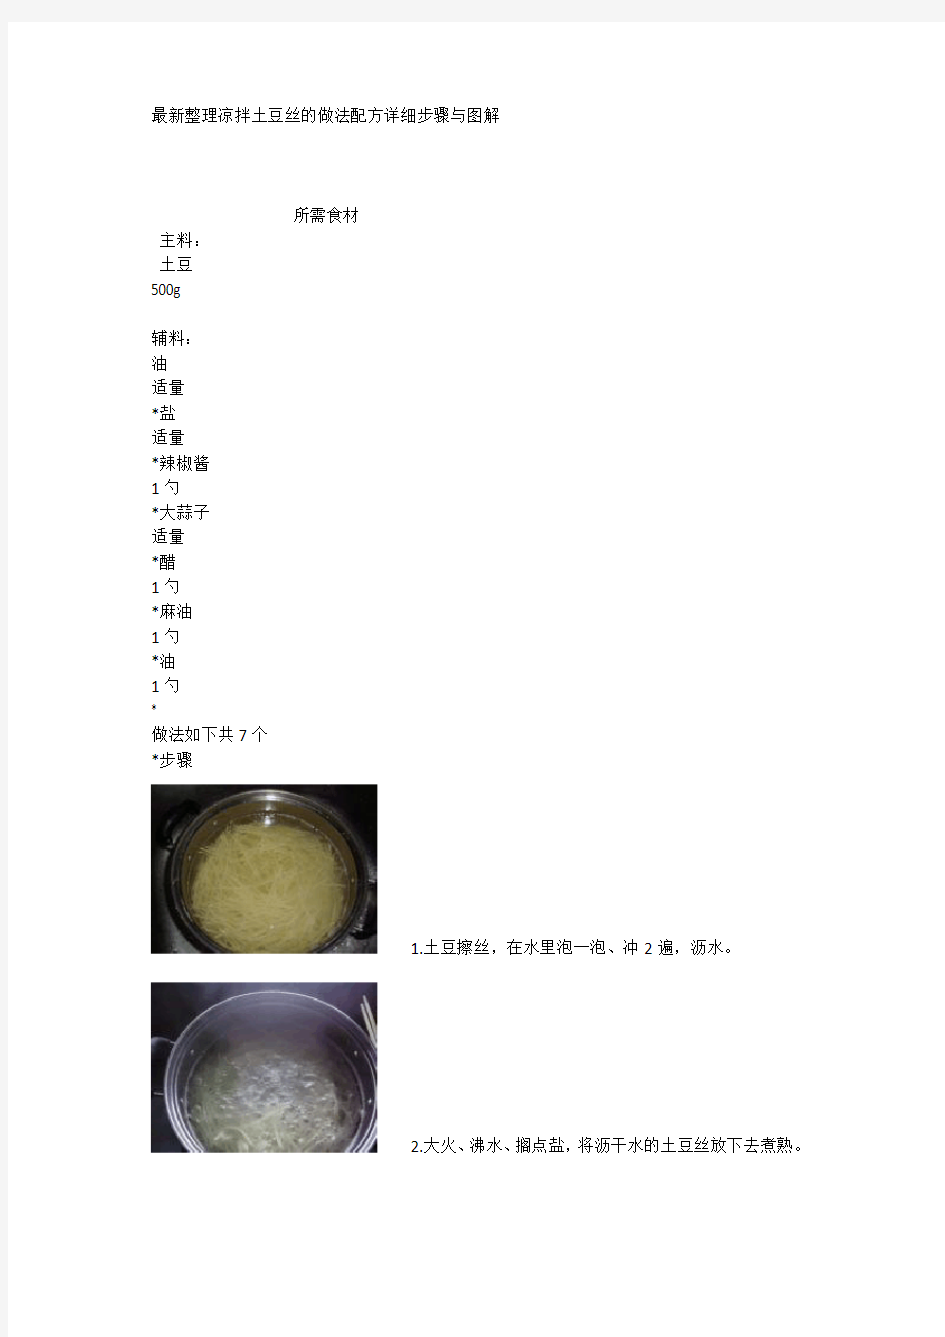 最新整理凉拌土豆丝的做法配方详细步骤与图解.docx